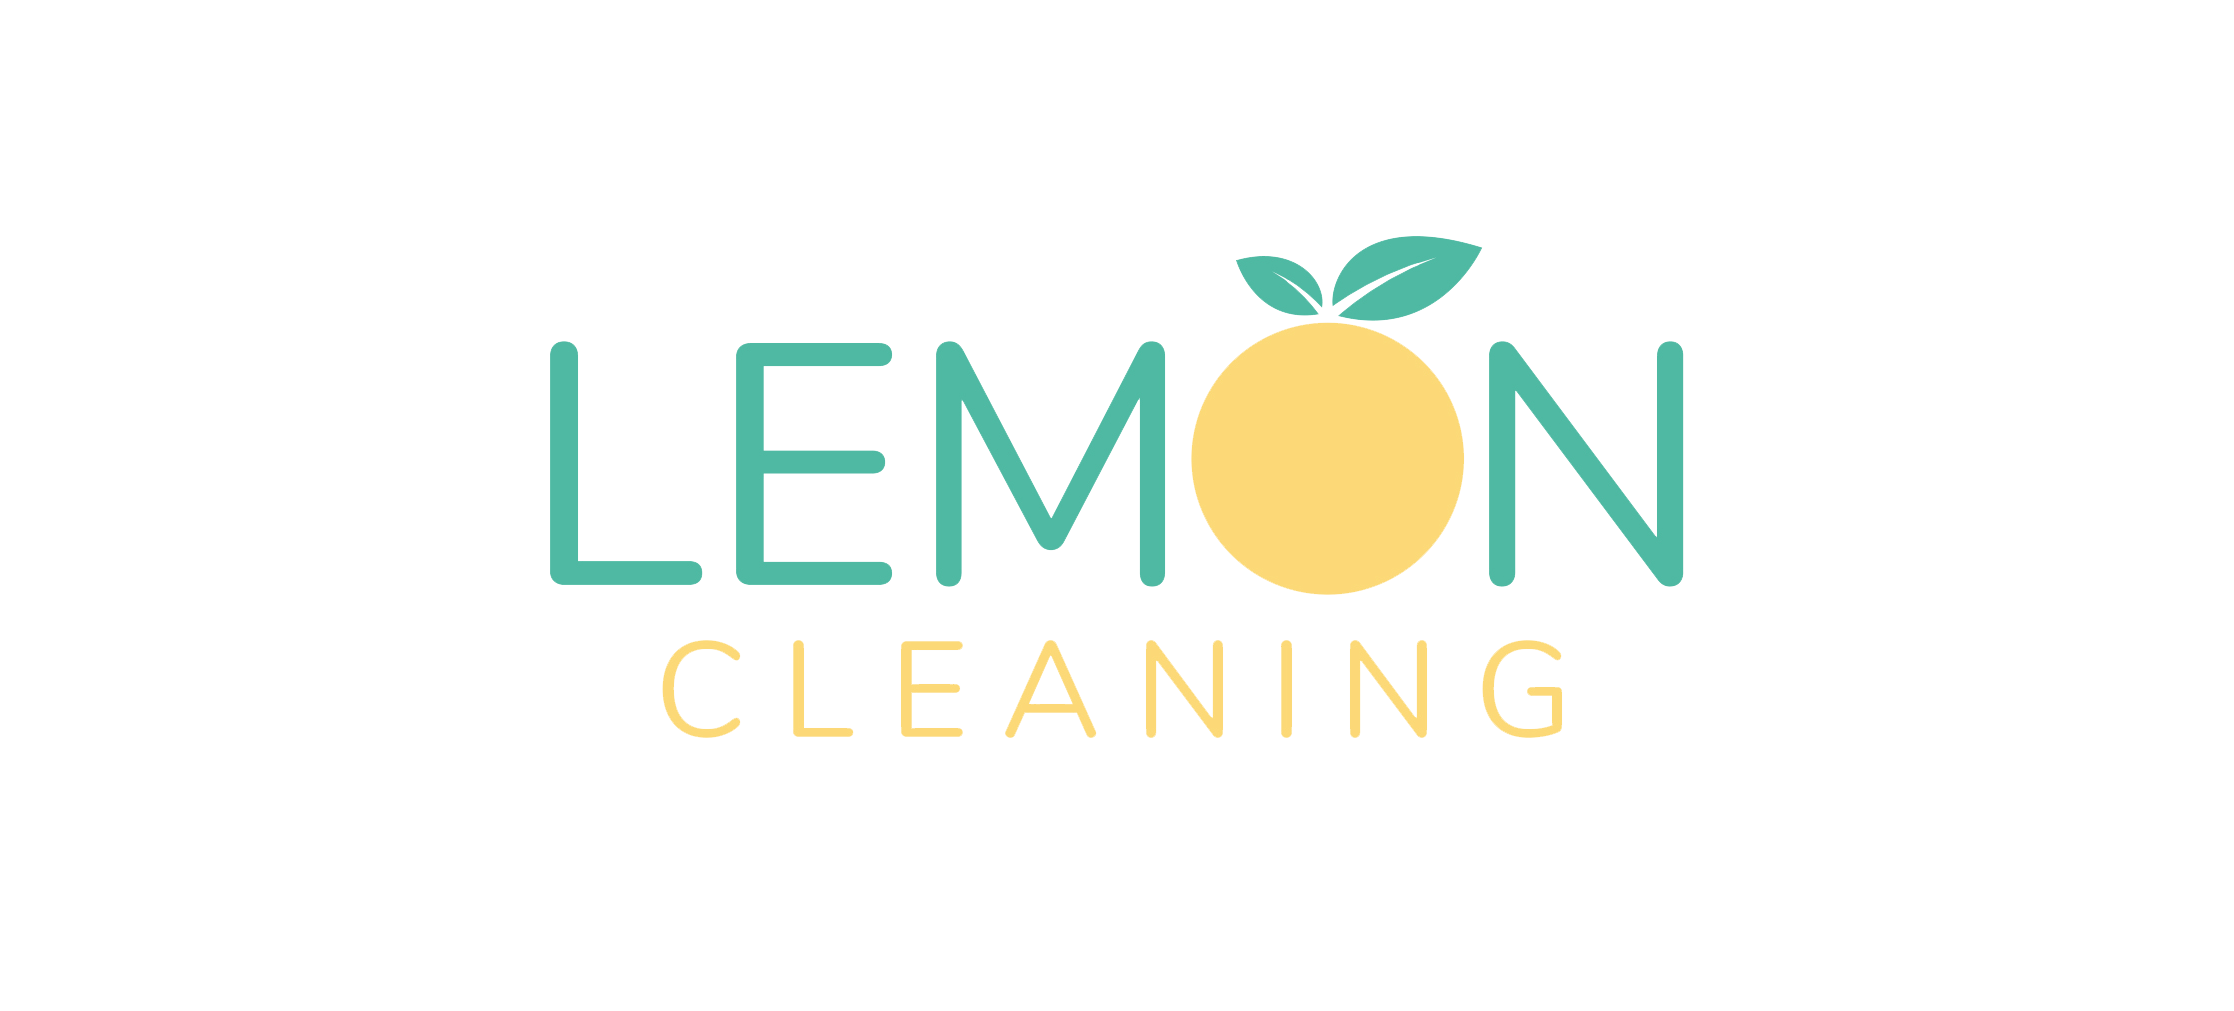 Lemon Cleaning logo